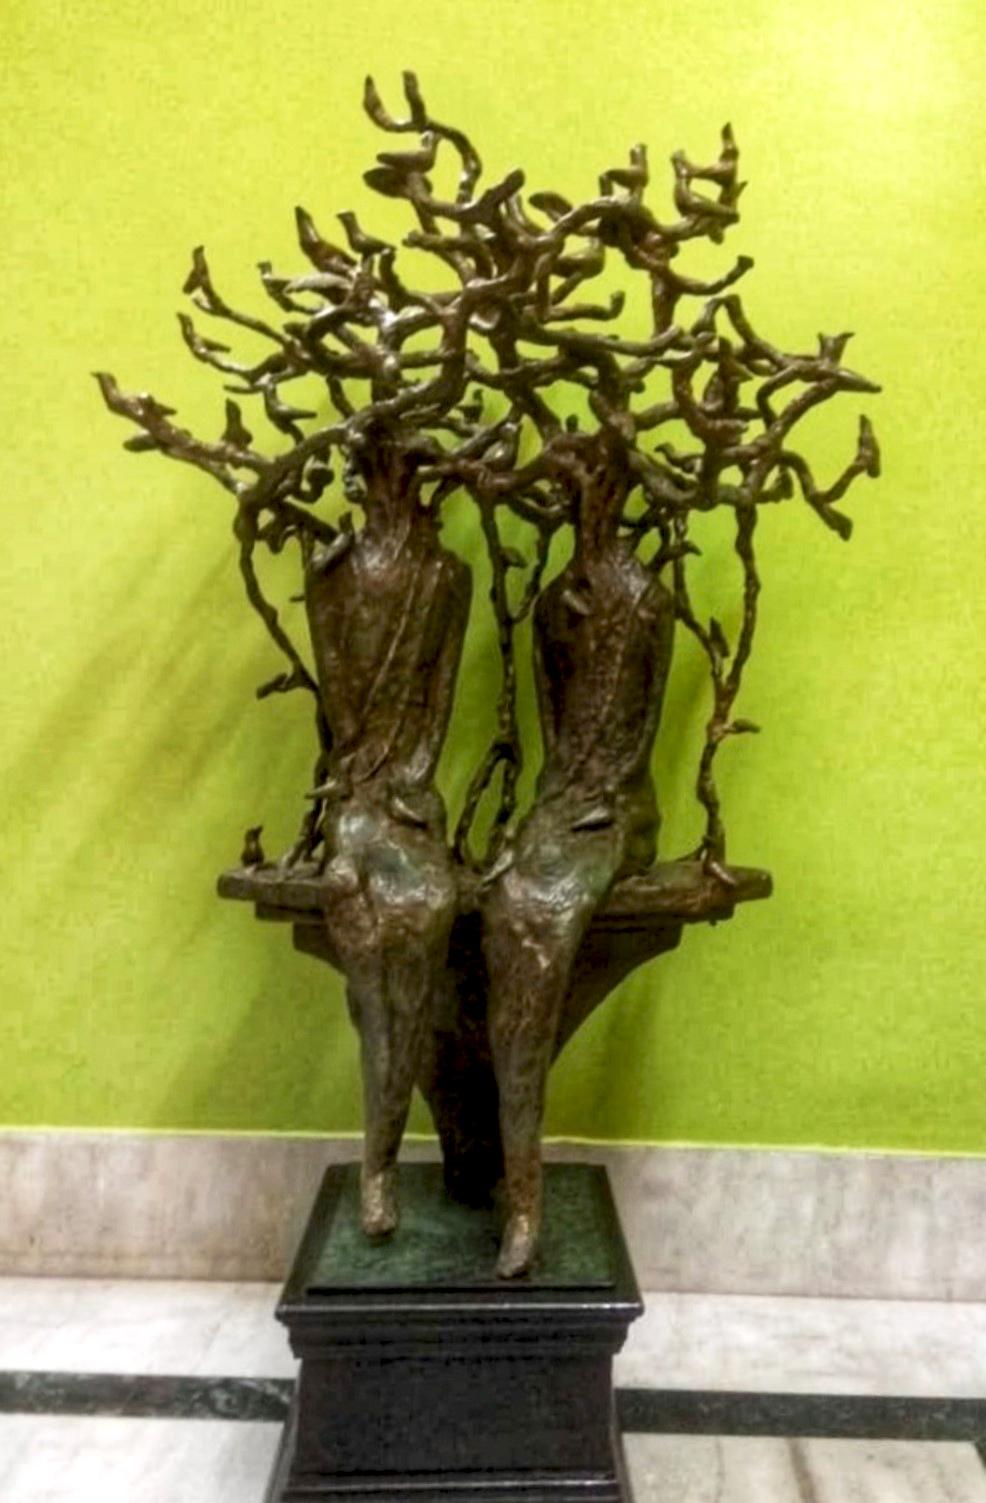 The green Tree, Bronzeskulptur eines zeitgenössischen indischen Künstlers "Auf Lager".